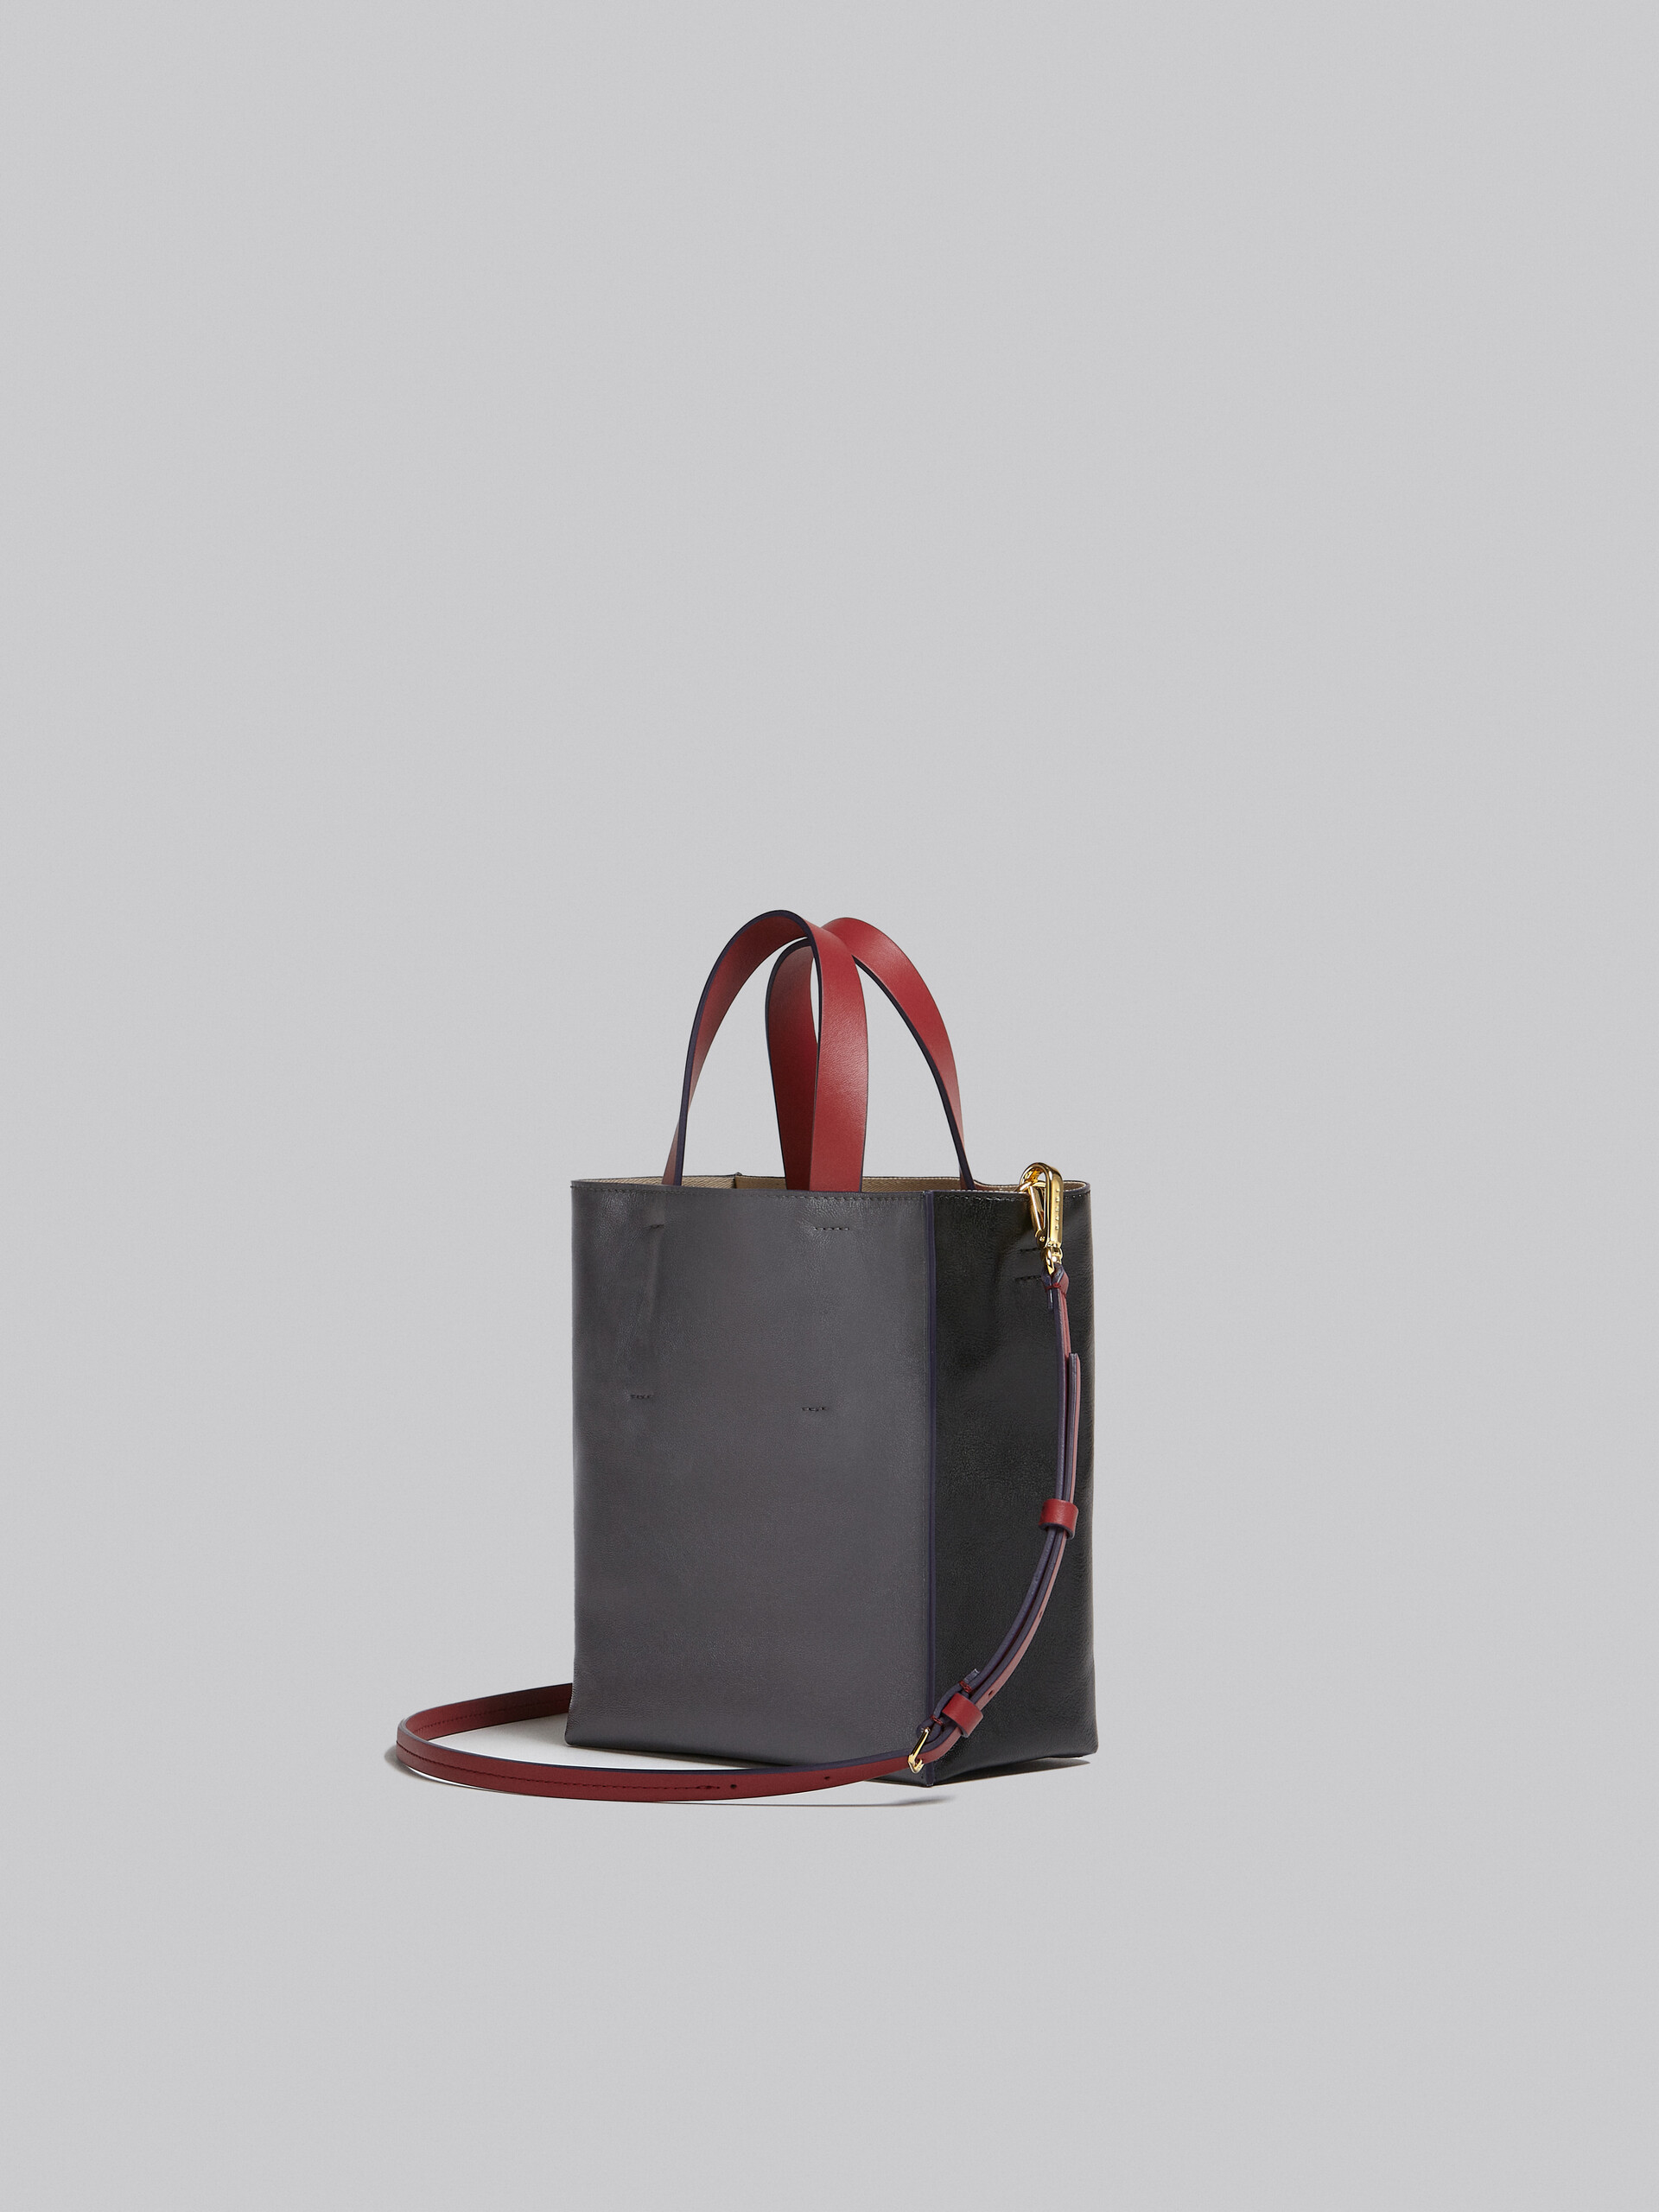 Mini-sac Museo Soft en cuir gris, noir et rouge - Sacs cabas - Image 3